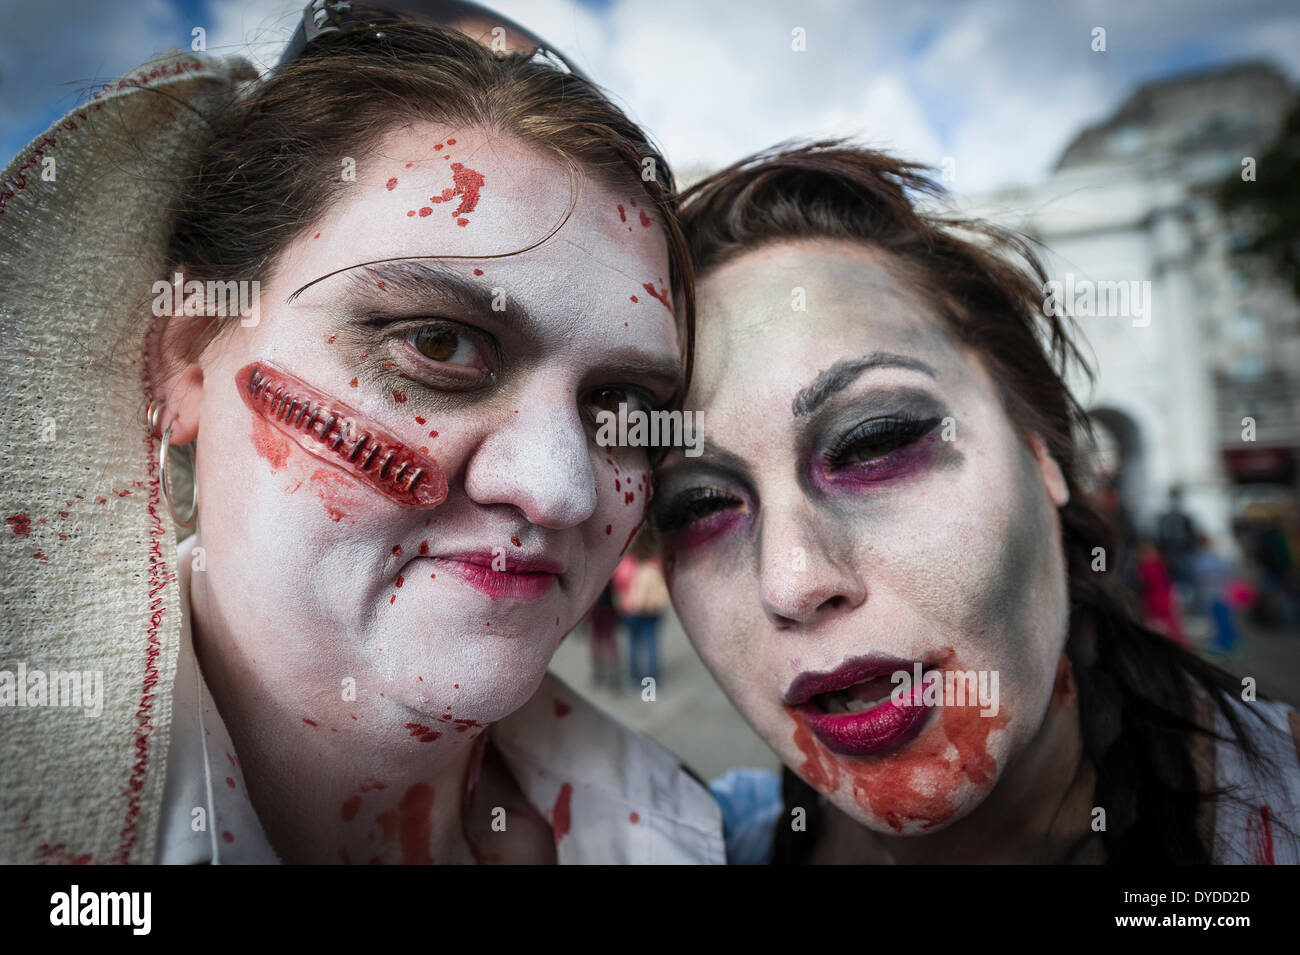 Les participants à l'assemblée annuelle de Londres Zombie Invasion de la collecte de fonds pour les sans-abri St Mungo's la charité. Banque D'Images